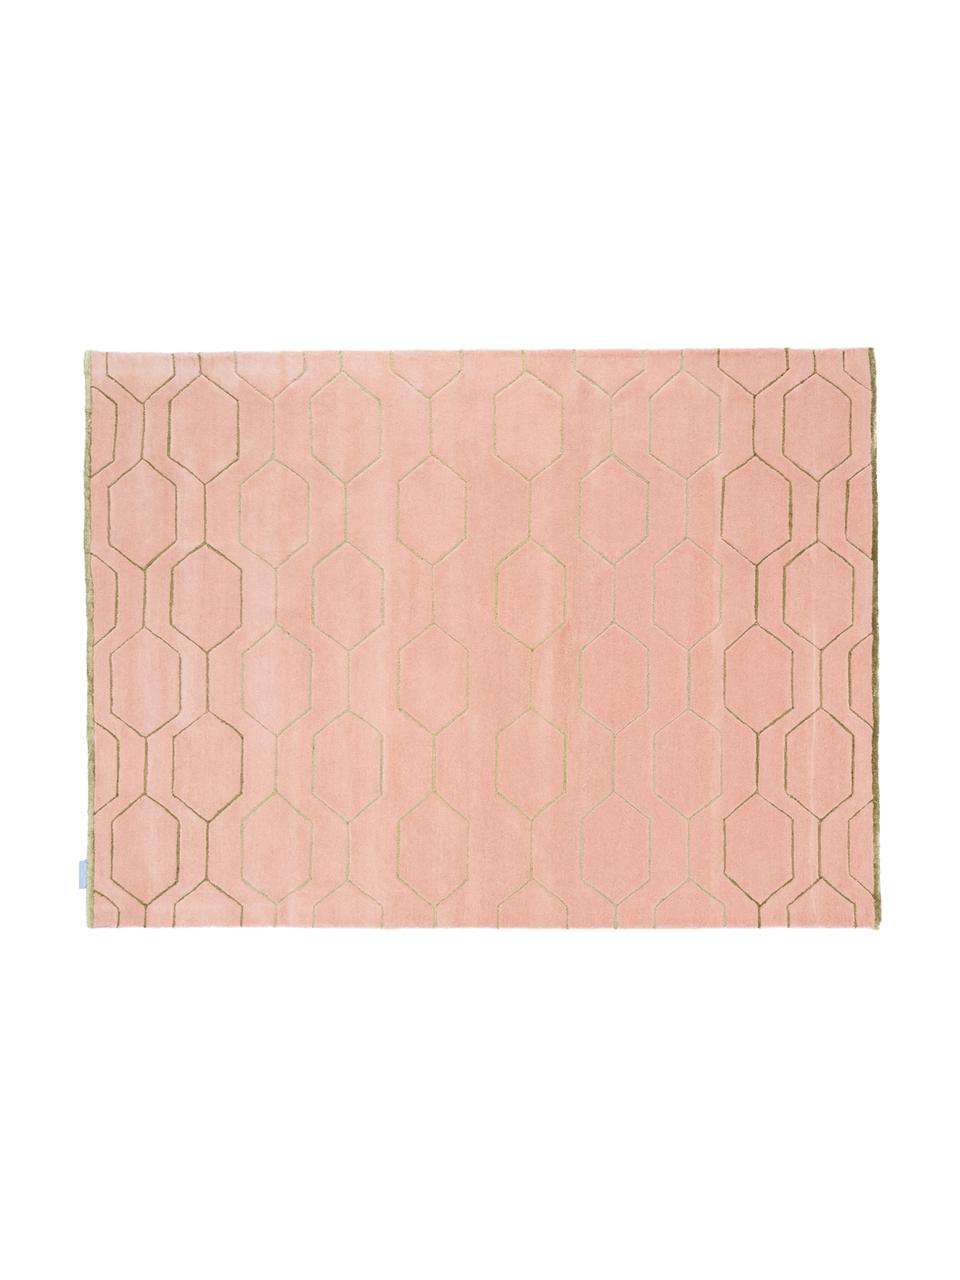 Handgetufte wollen vloerkleed Arris, Bovenzijde: 90% wol, 10% viscose, Onderzijde: katoen met latex bekleed, Roze, beige, 120 x 180 cm